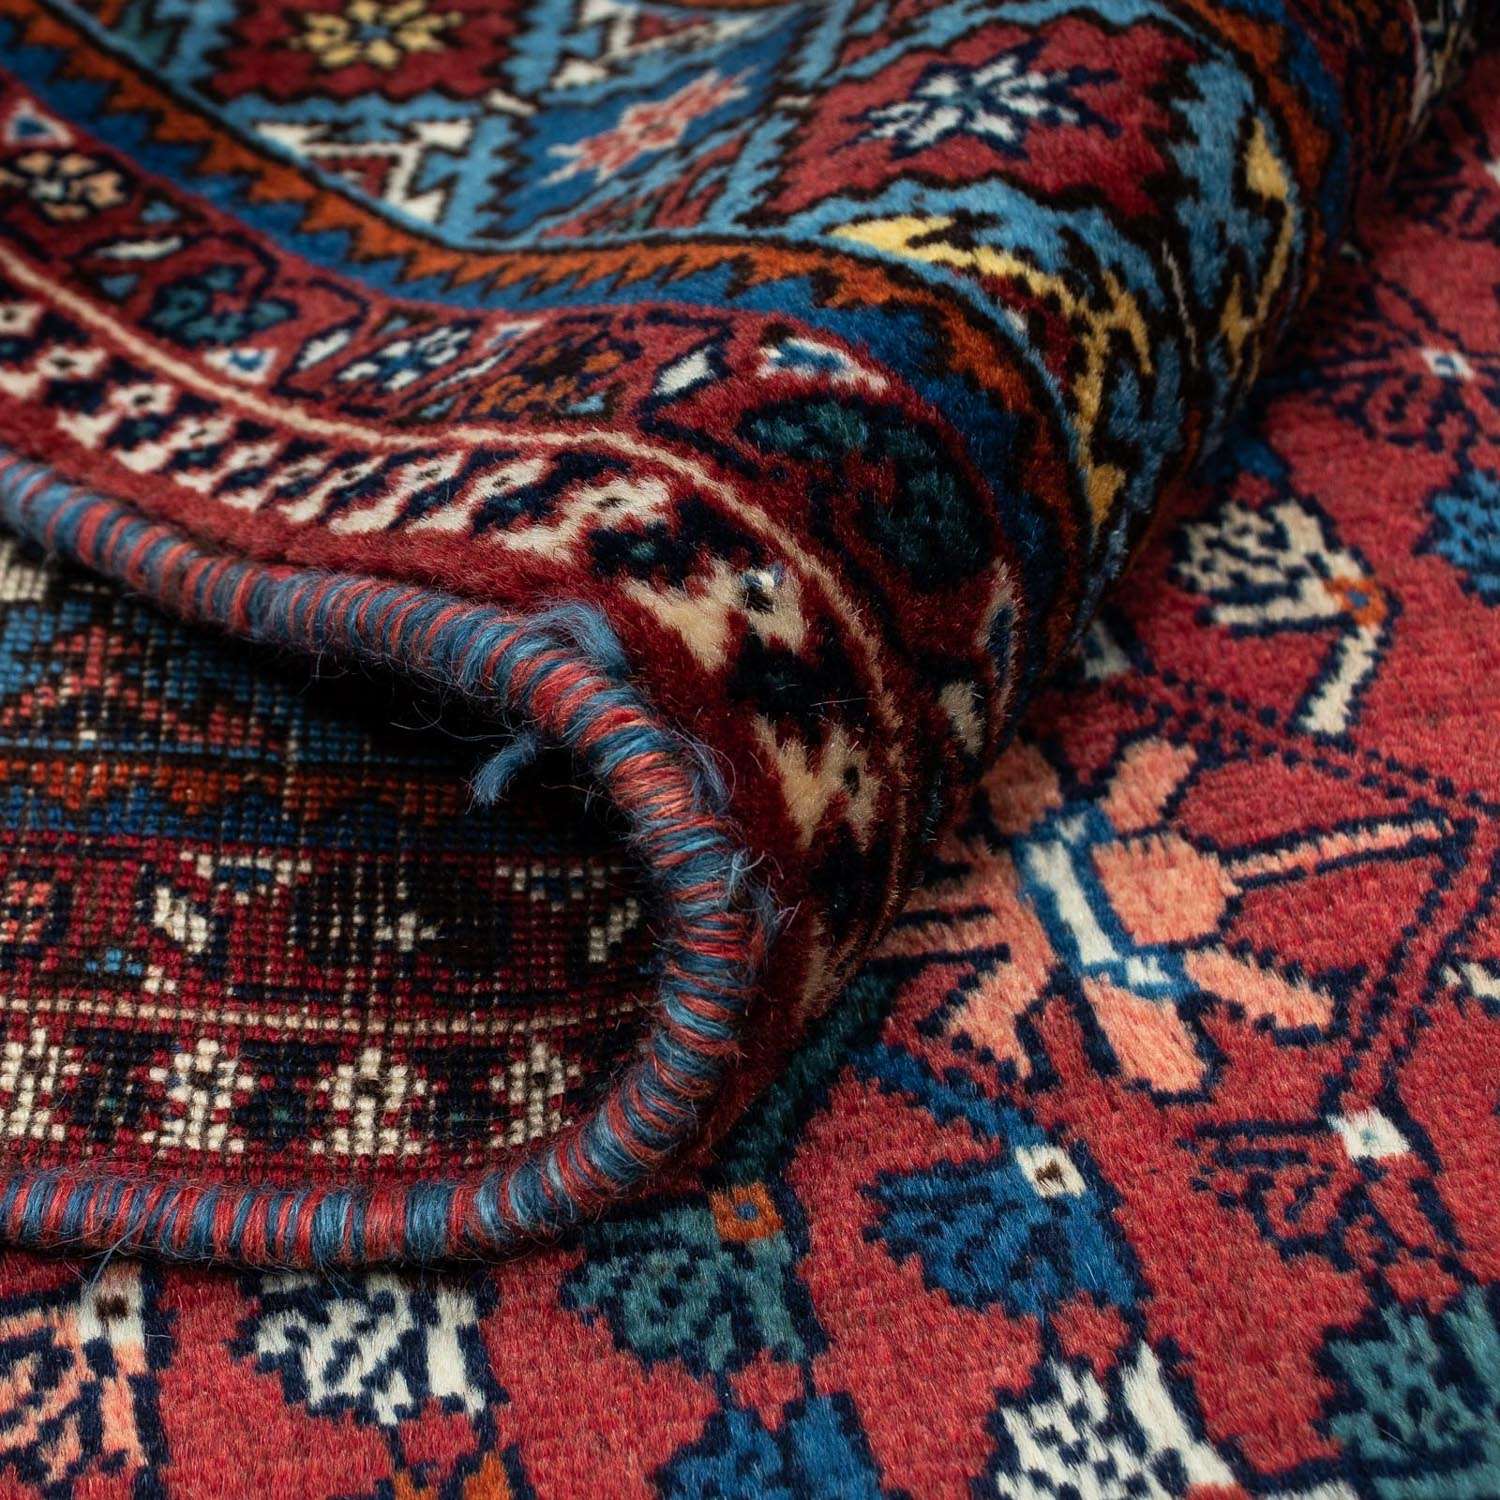 Perski dywan - Nomadyczny - 320 x 205 cm - ciemna czerwień